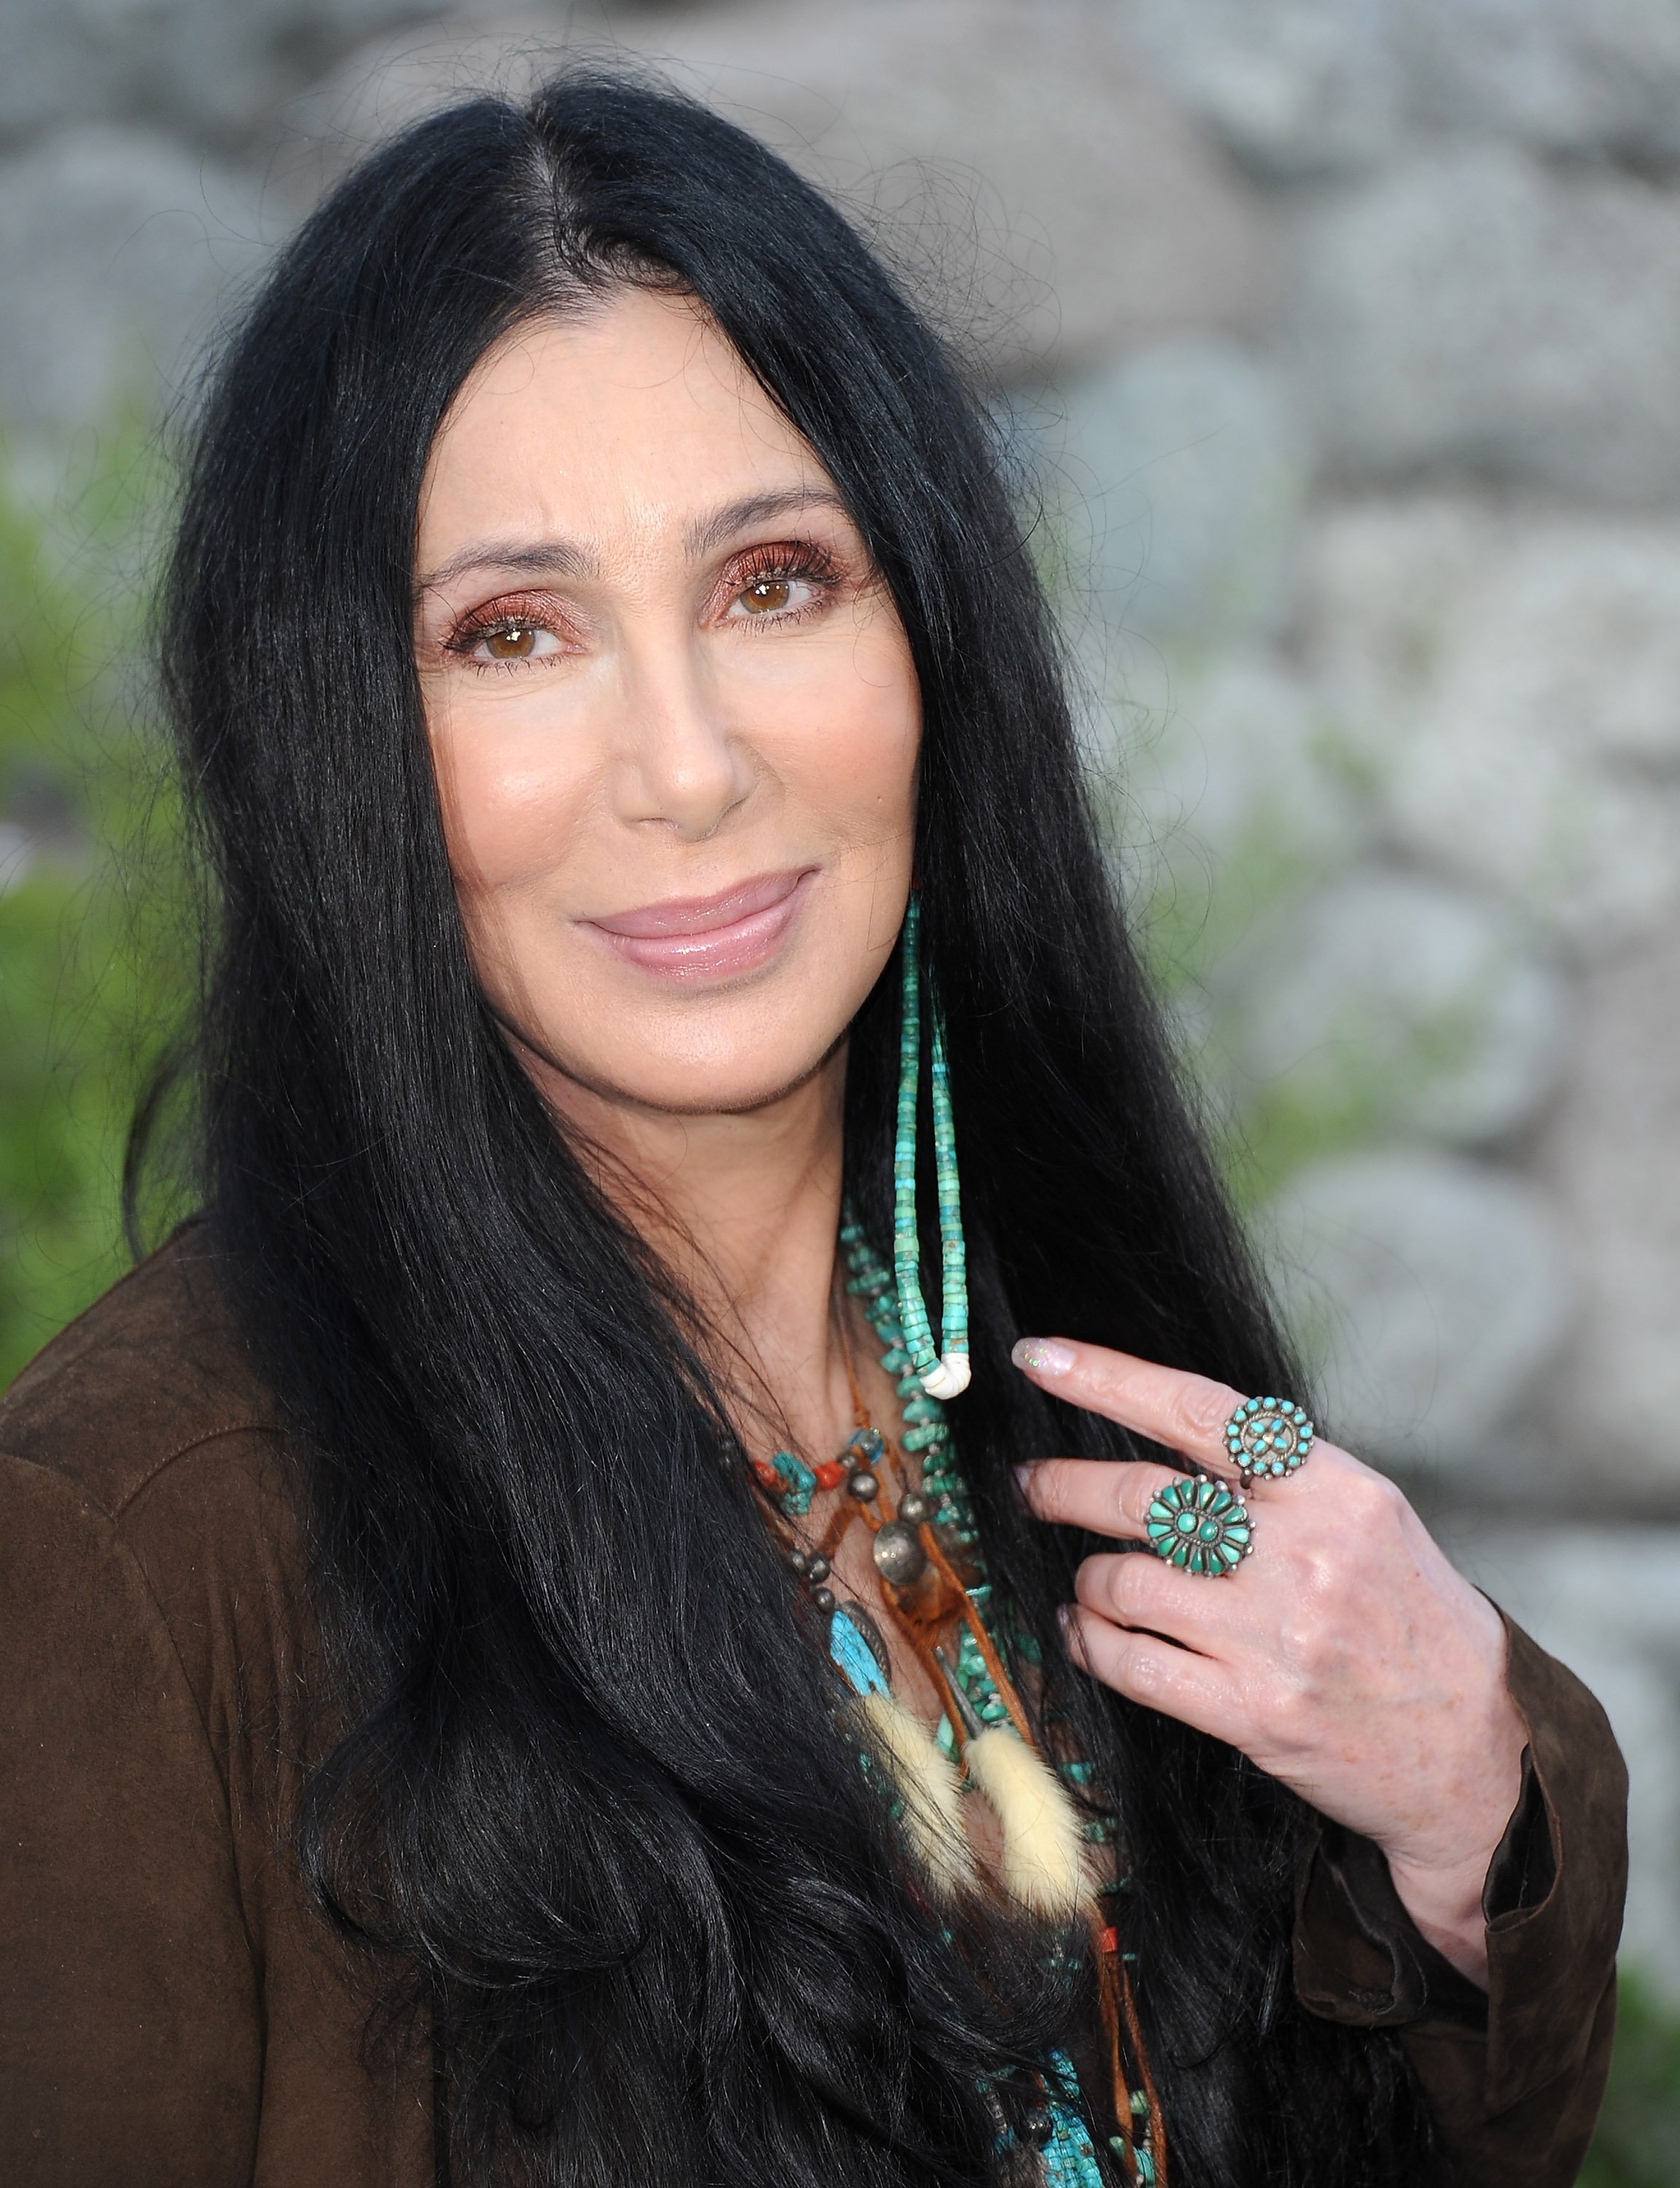 Cher arrive à la première de "The Zookeeper" au Regency Village Theatre le 6 juillet 2011, à Los Angeles, en Californie. | Source : Getty Images